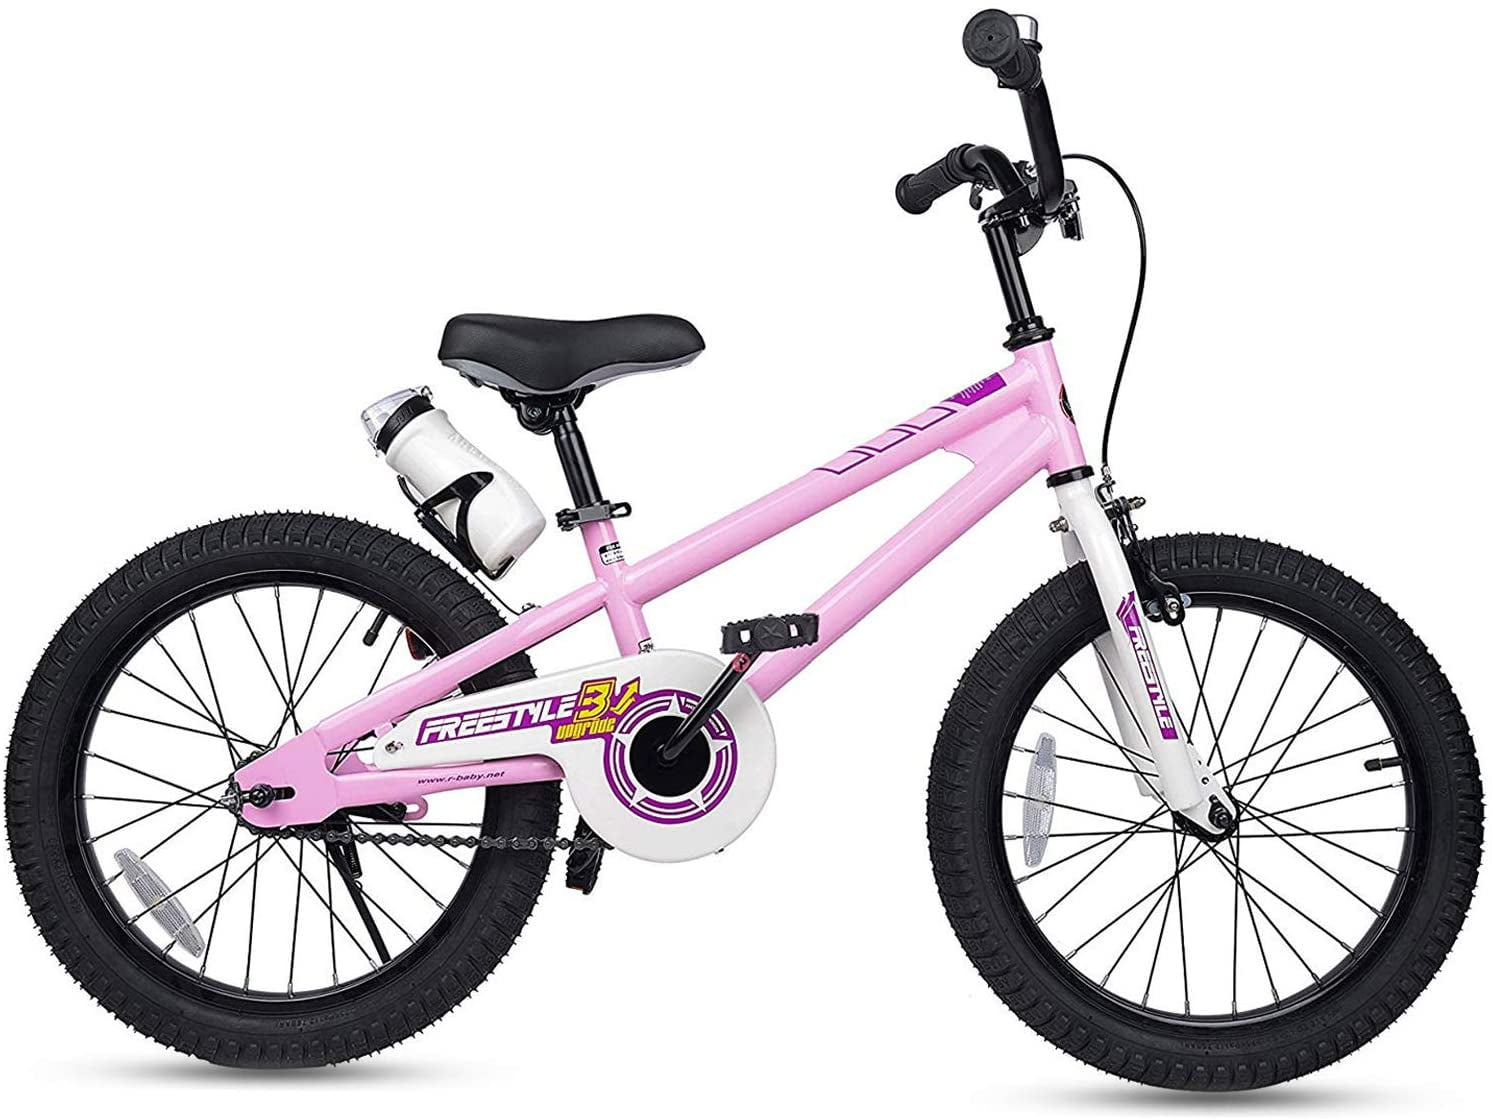 RoyalBaby Kids Bike Boys Girls Freestyle Bicycle 12 14 16 inch with ... - 595917b0 1a6b 42b2 83e1 47f8cDDa4227.e9Dc5224e7D699274c214e6e800591e7